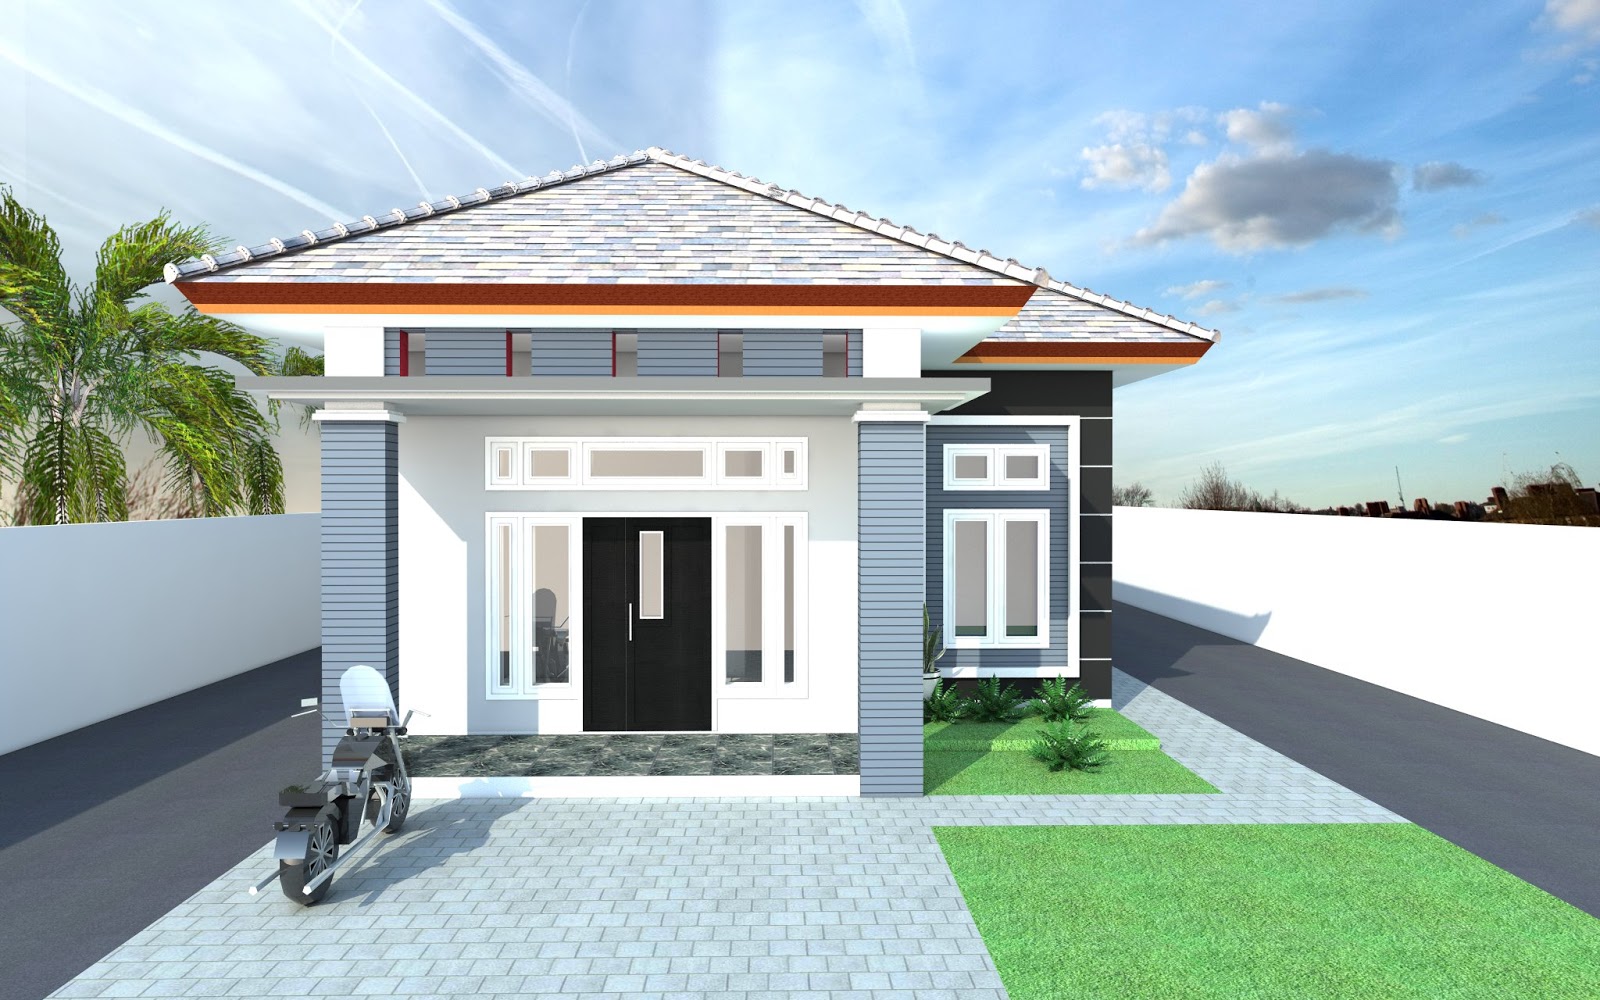 63 Desain Rumah  Minimalis  Dwg  Desain Rumah  Minimalis  Terbaru